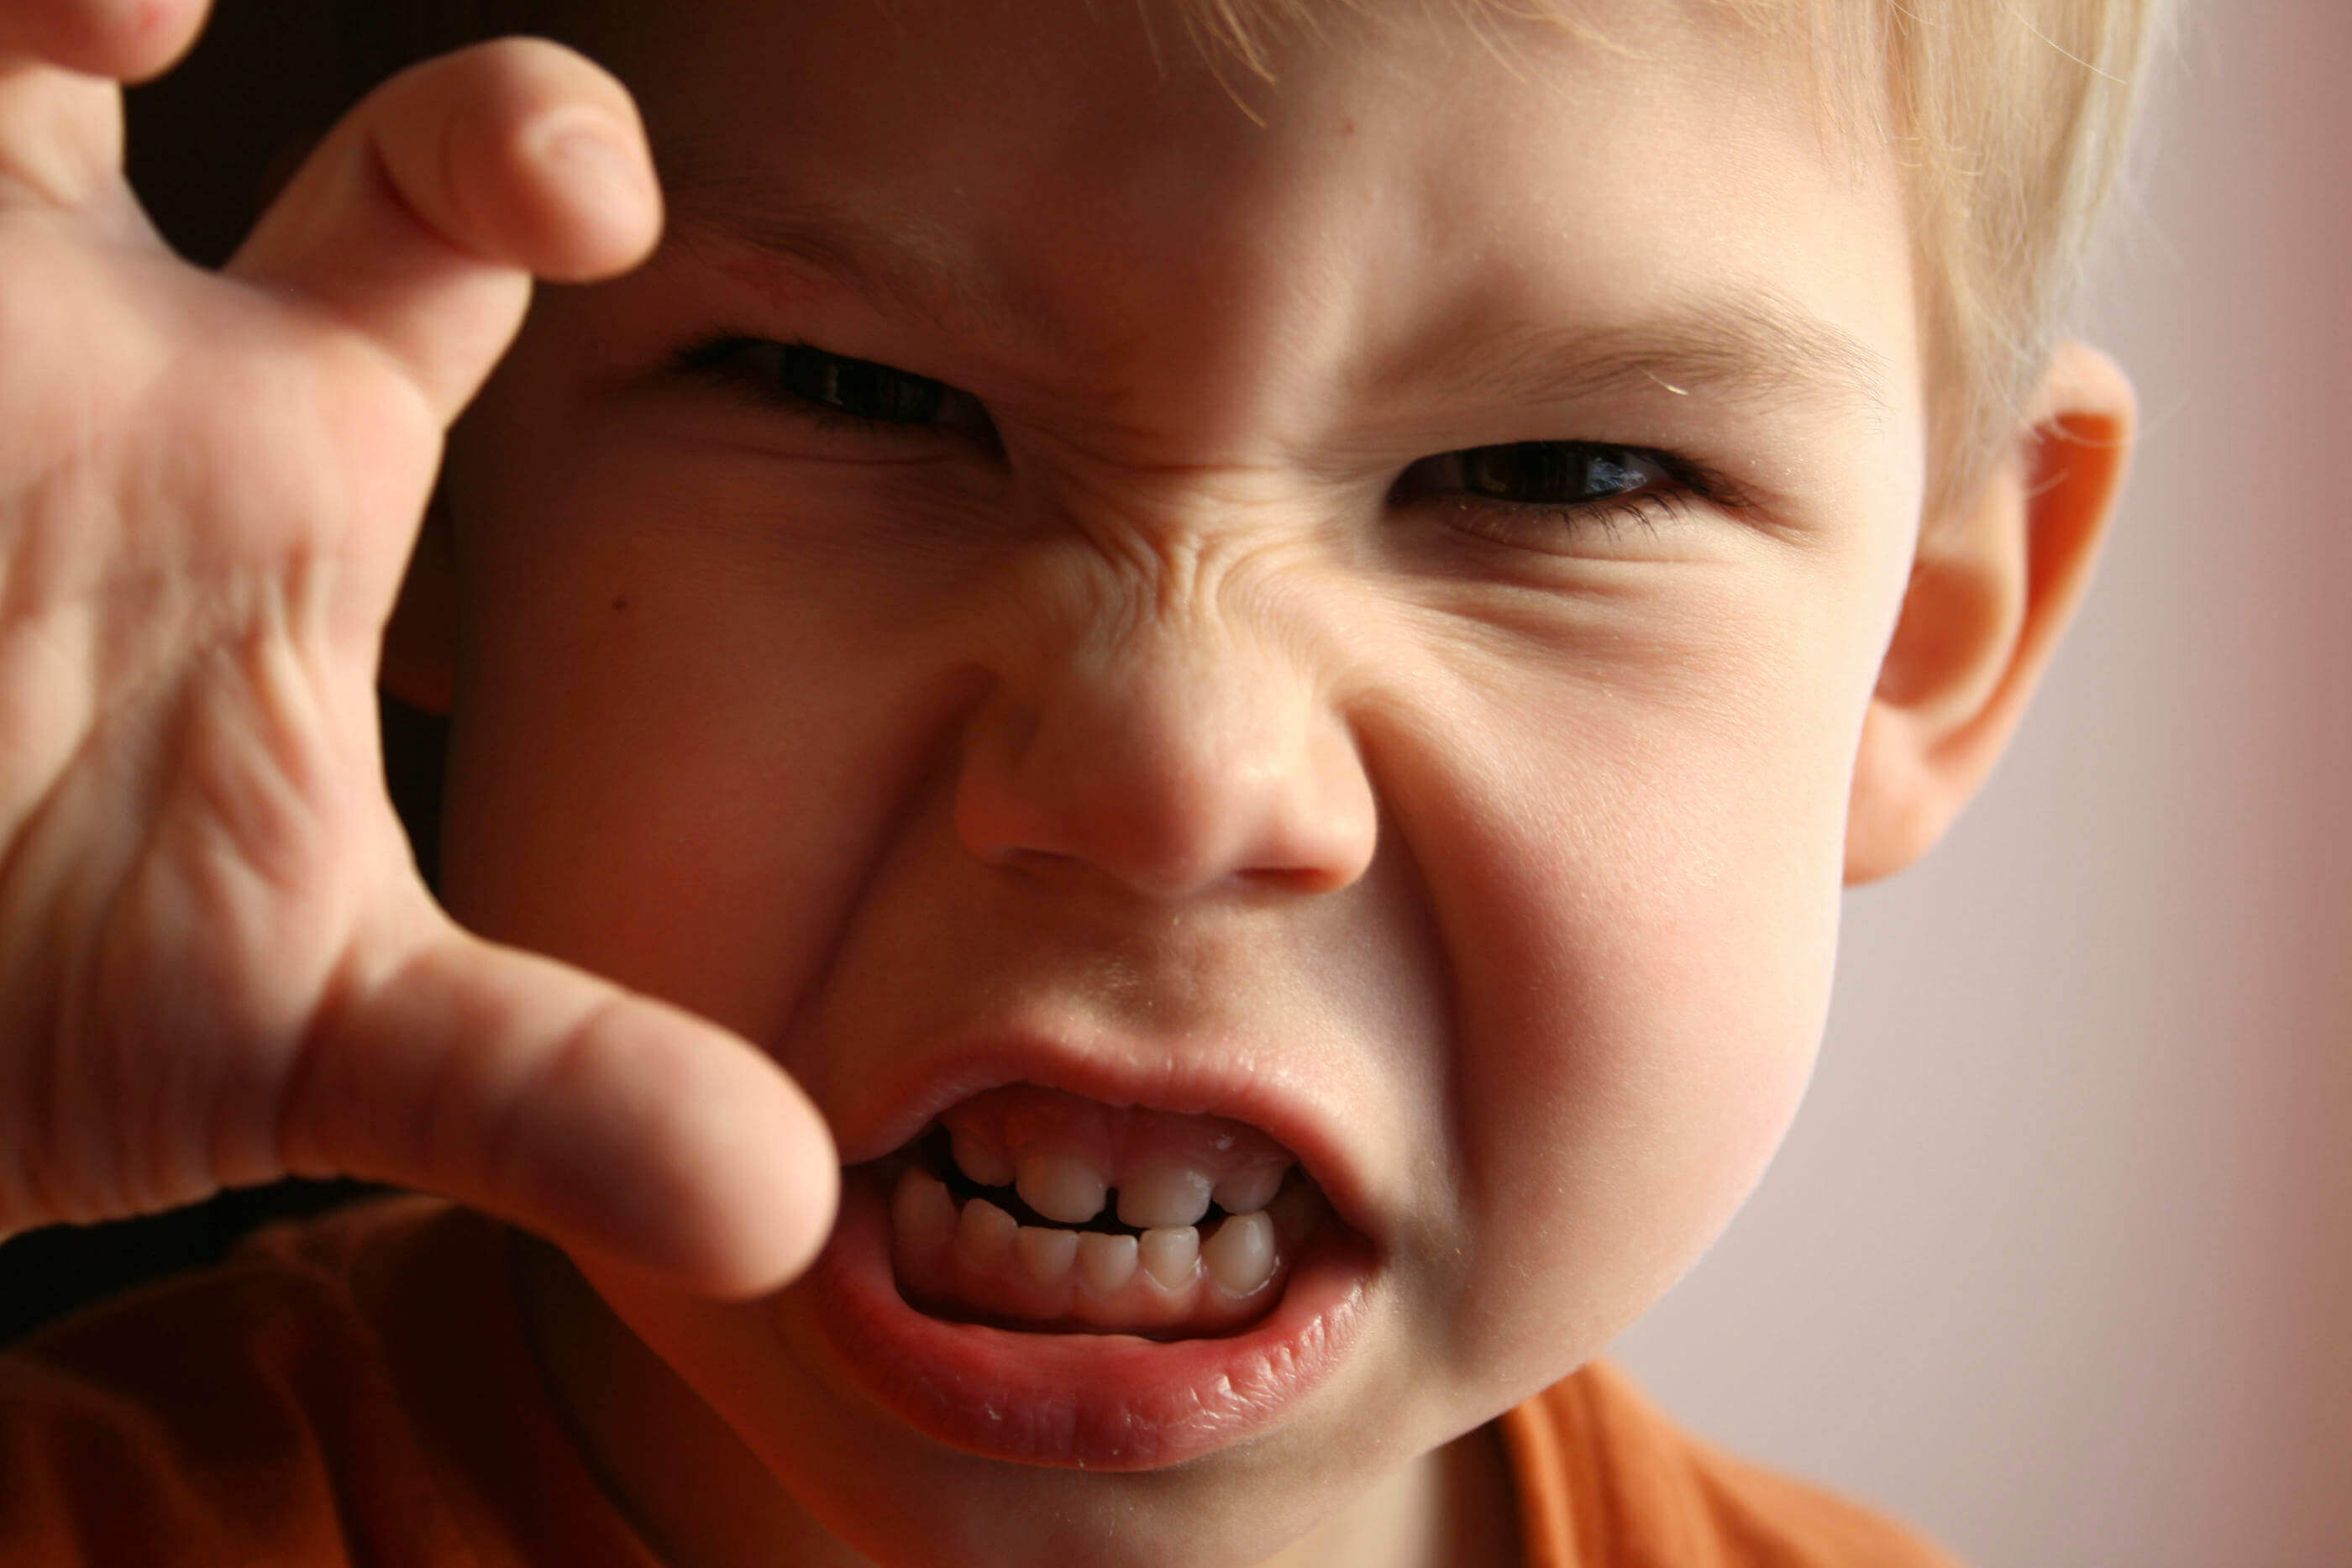 Mistä lapsen turhautuneisuus johtuu ja miten siihen kannattaa suhtautua?